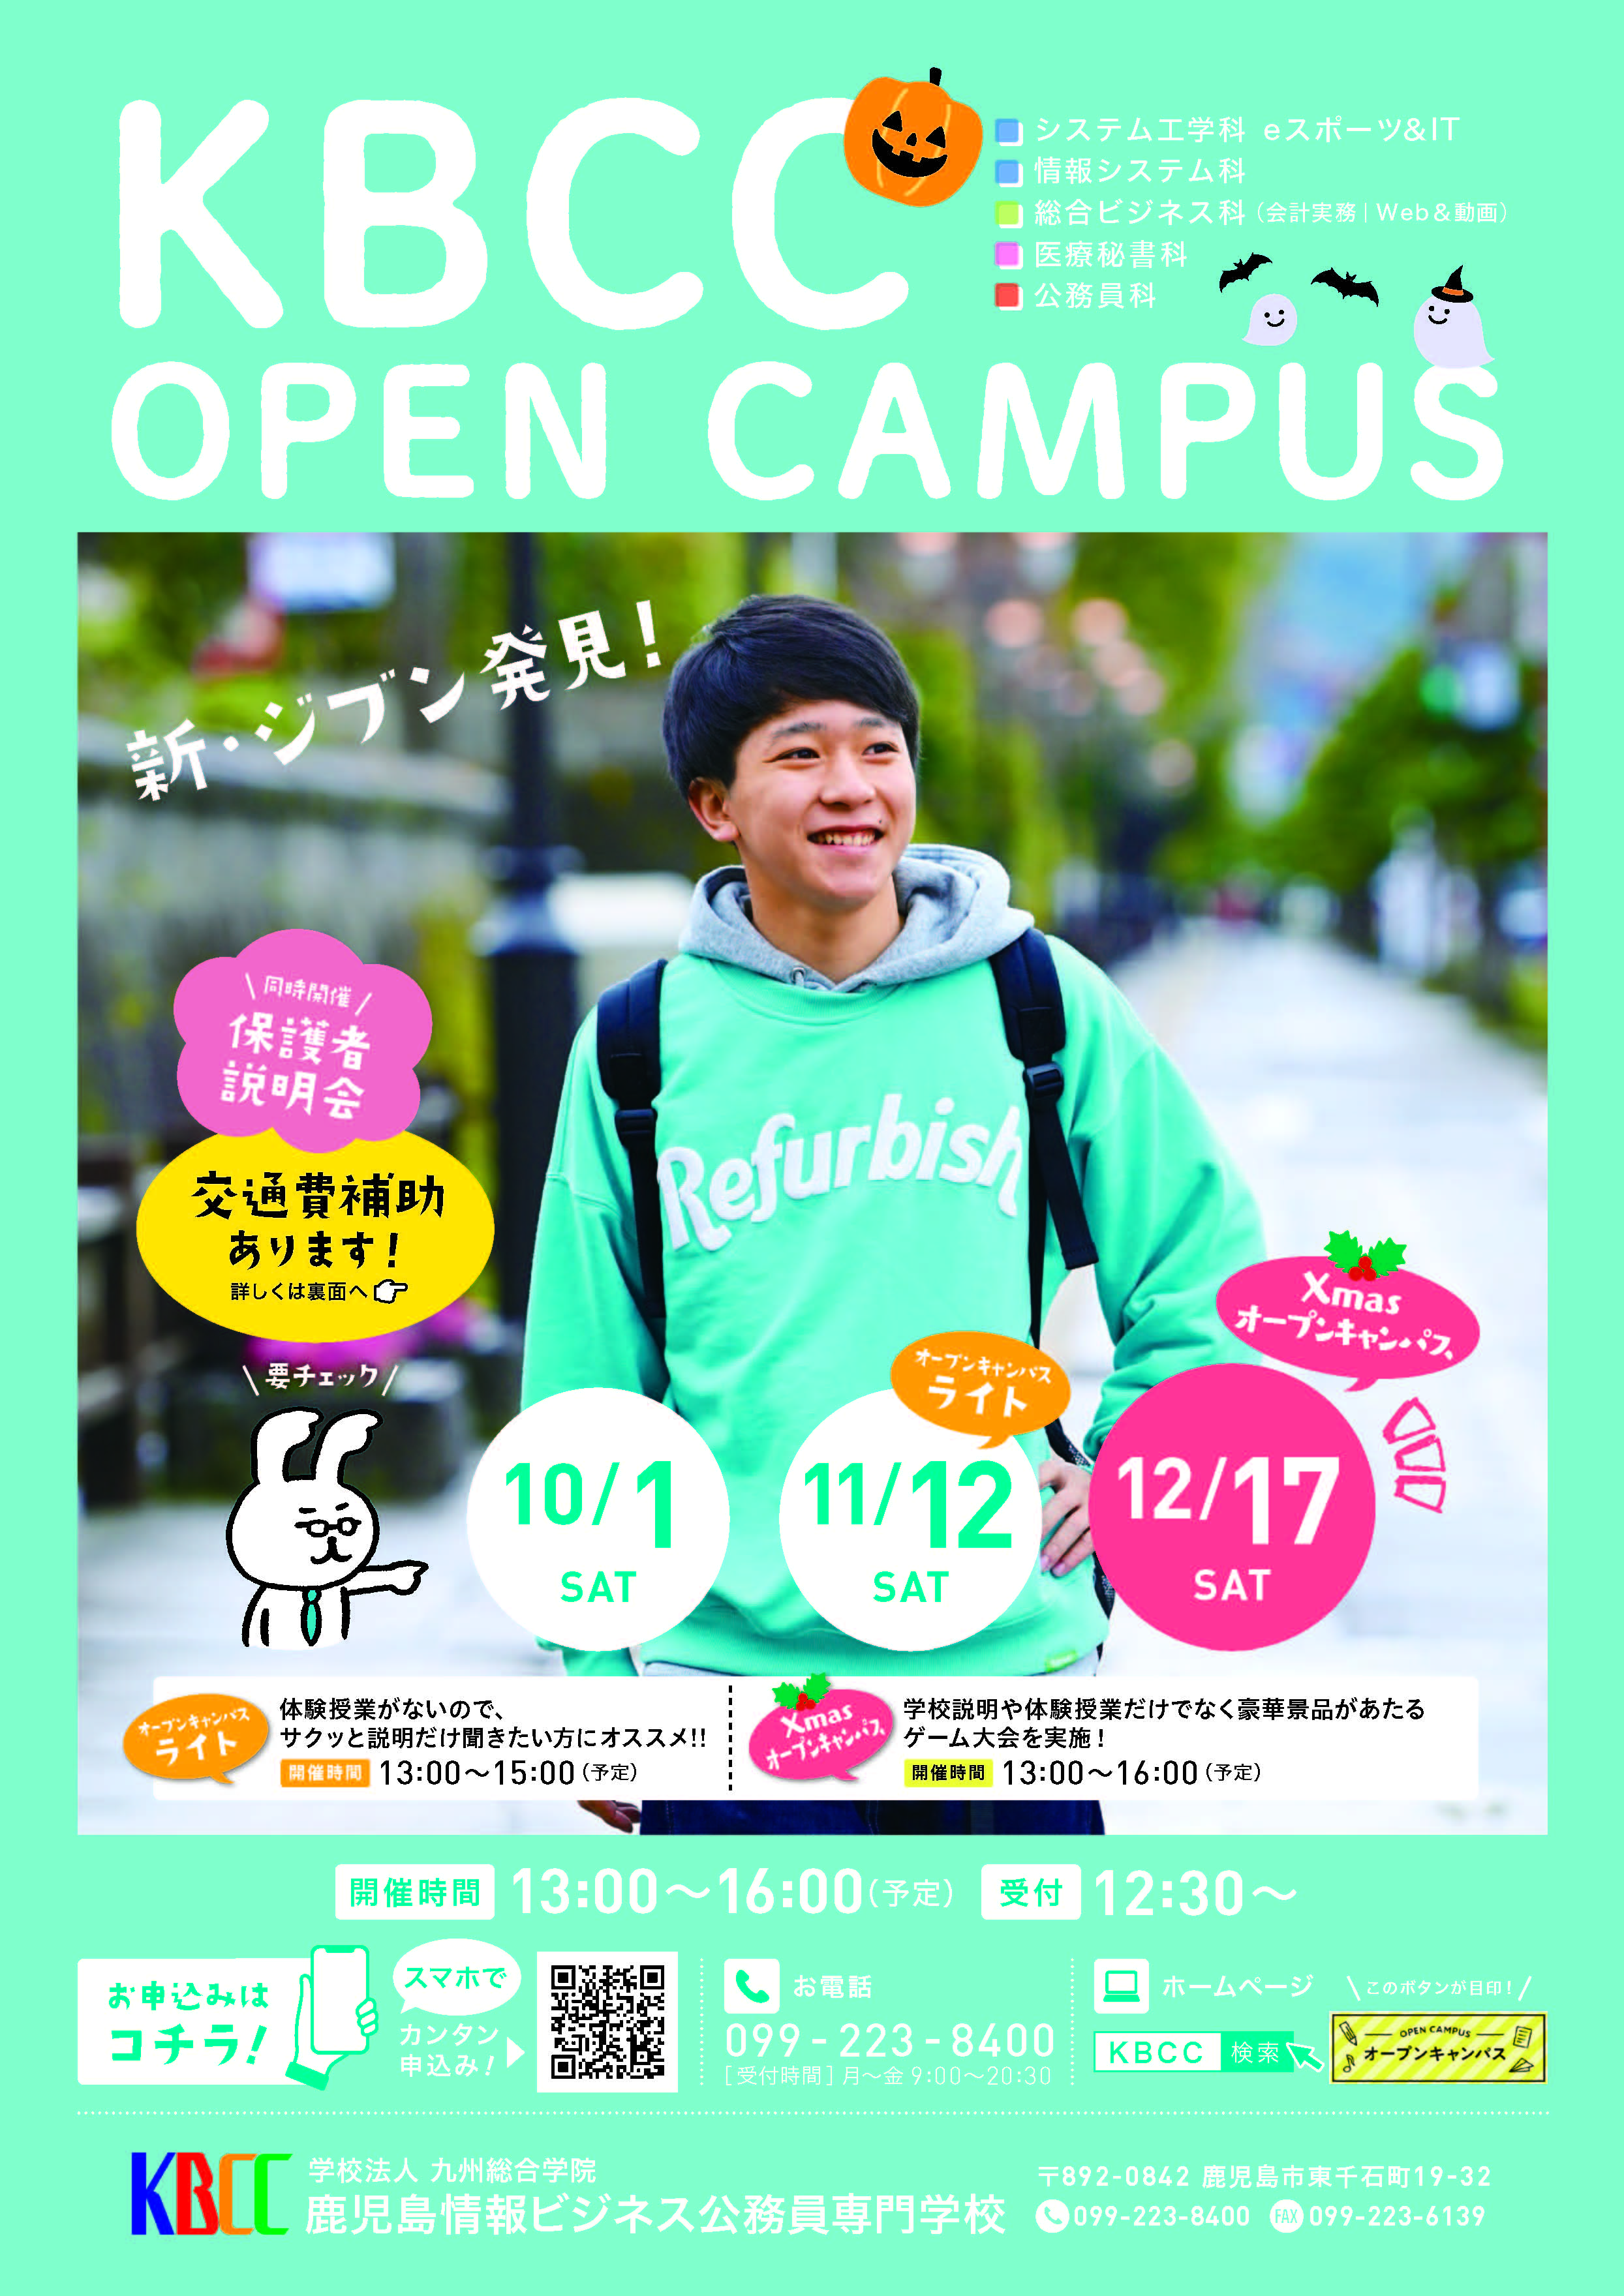 ★オープンキャンパス日程★